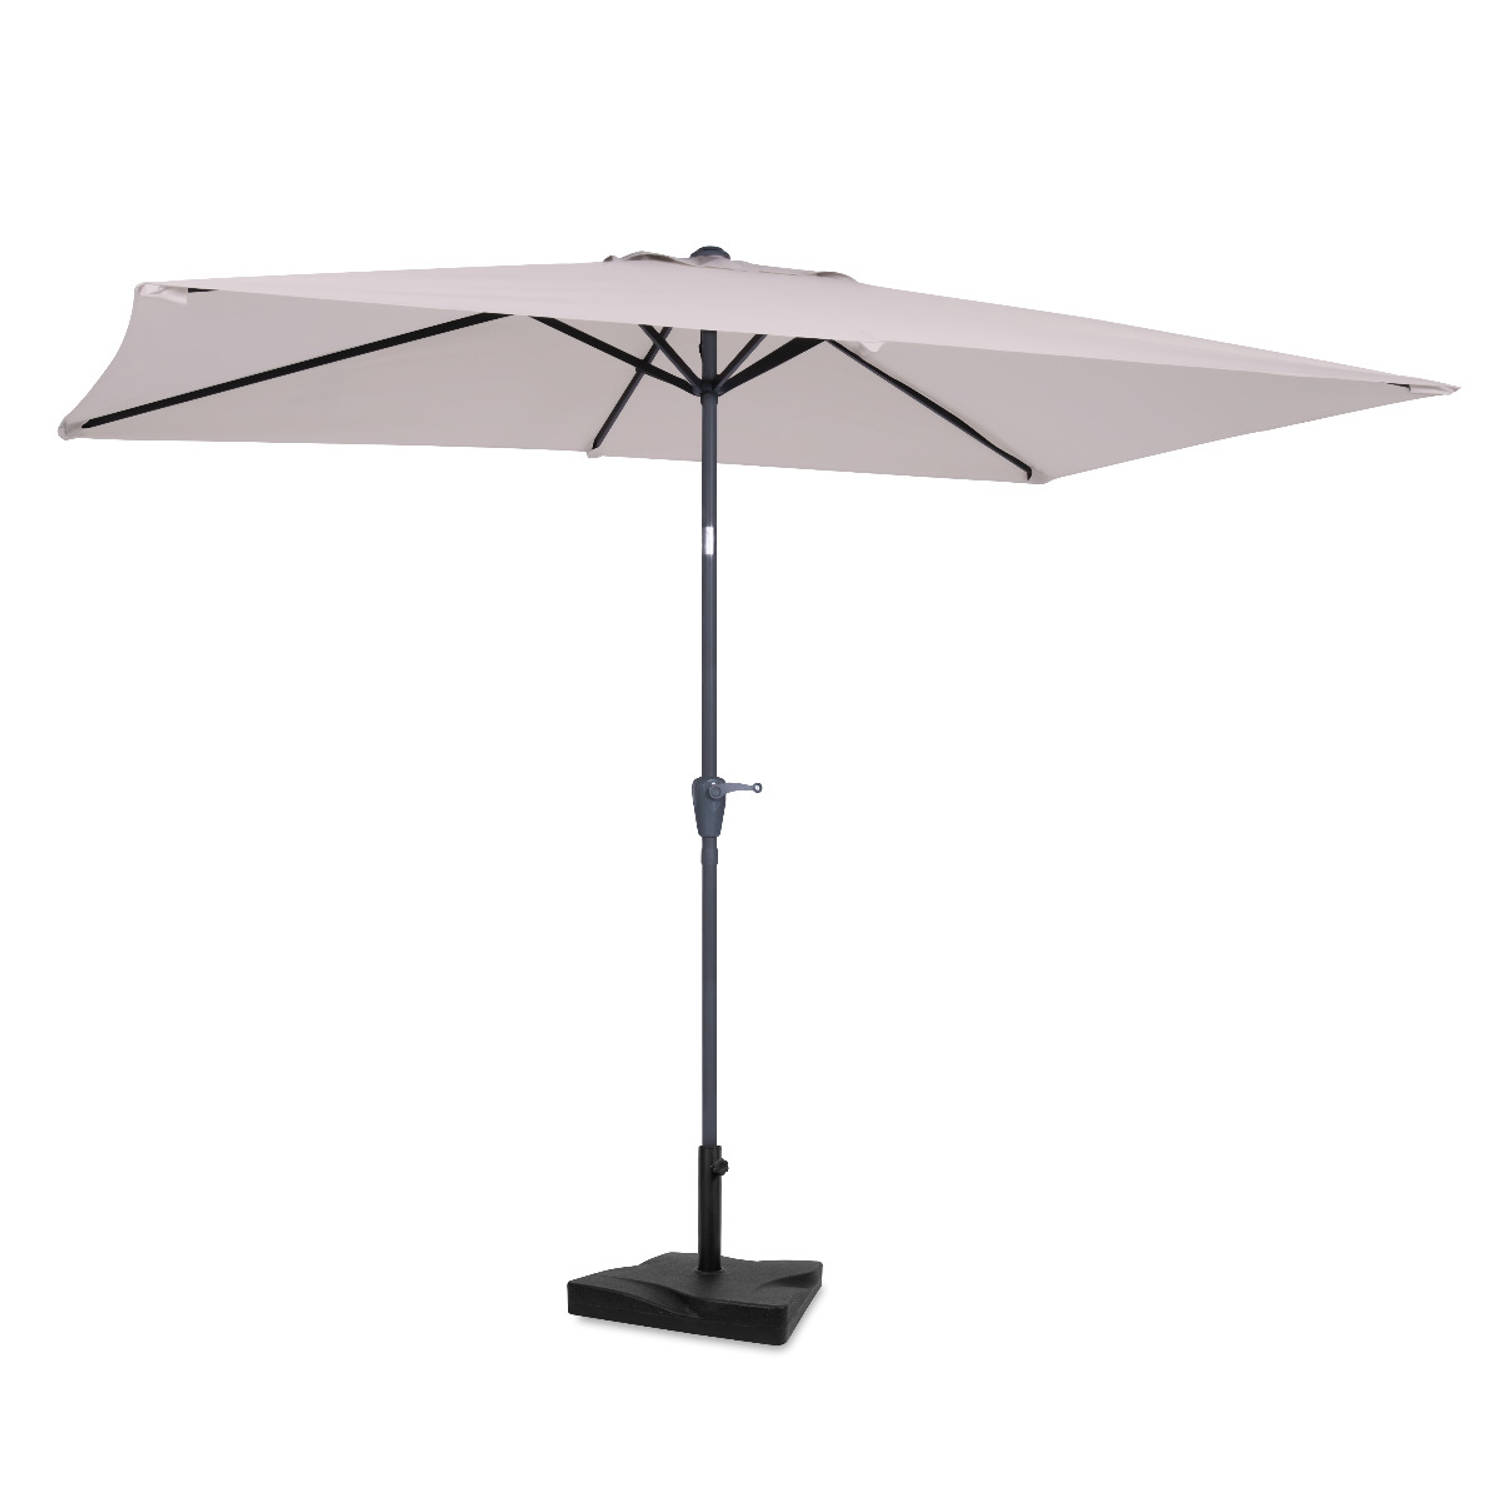 VONROC Premium Parasol Rapallo 200x300cm – Duurzame parasol - combi set incl. parasolvoet van 20 kg - Kantelbaar – UV werend doek - beige – Incl. beschermhoes